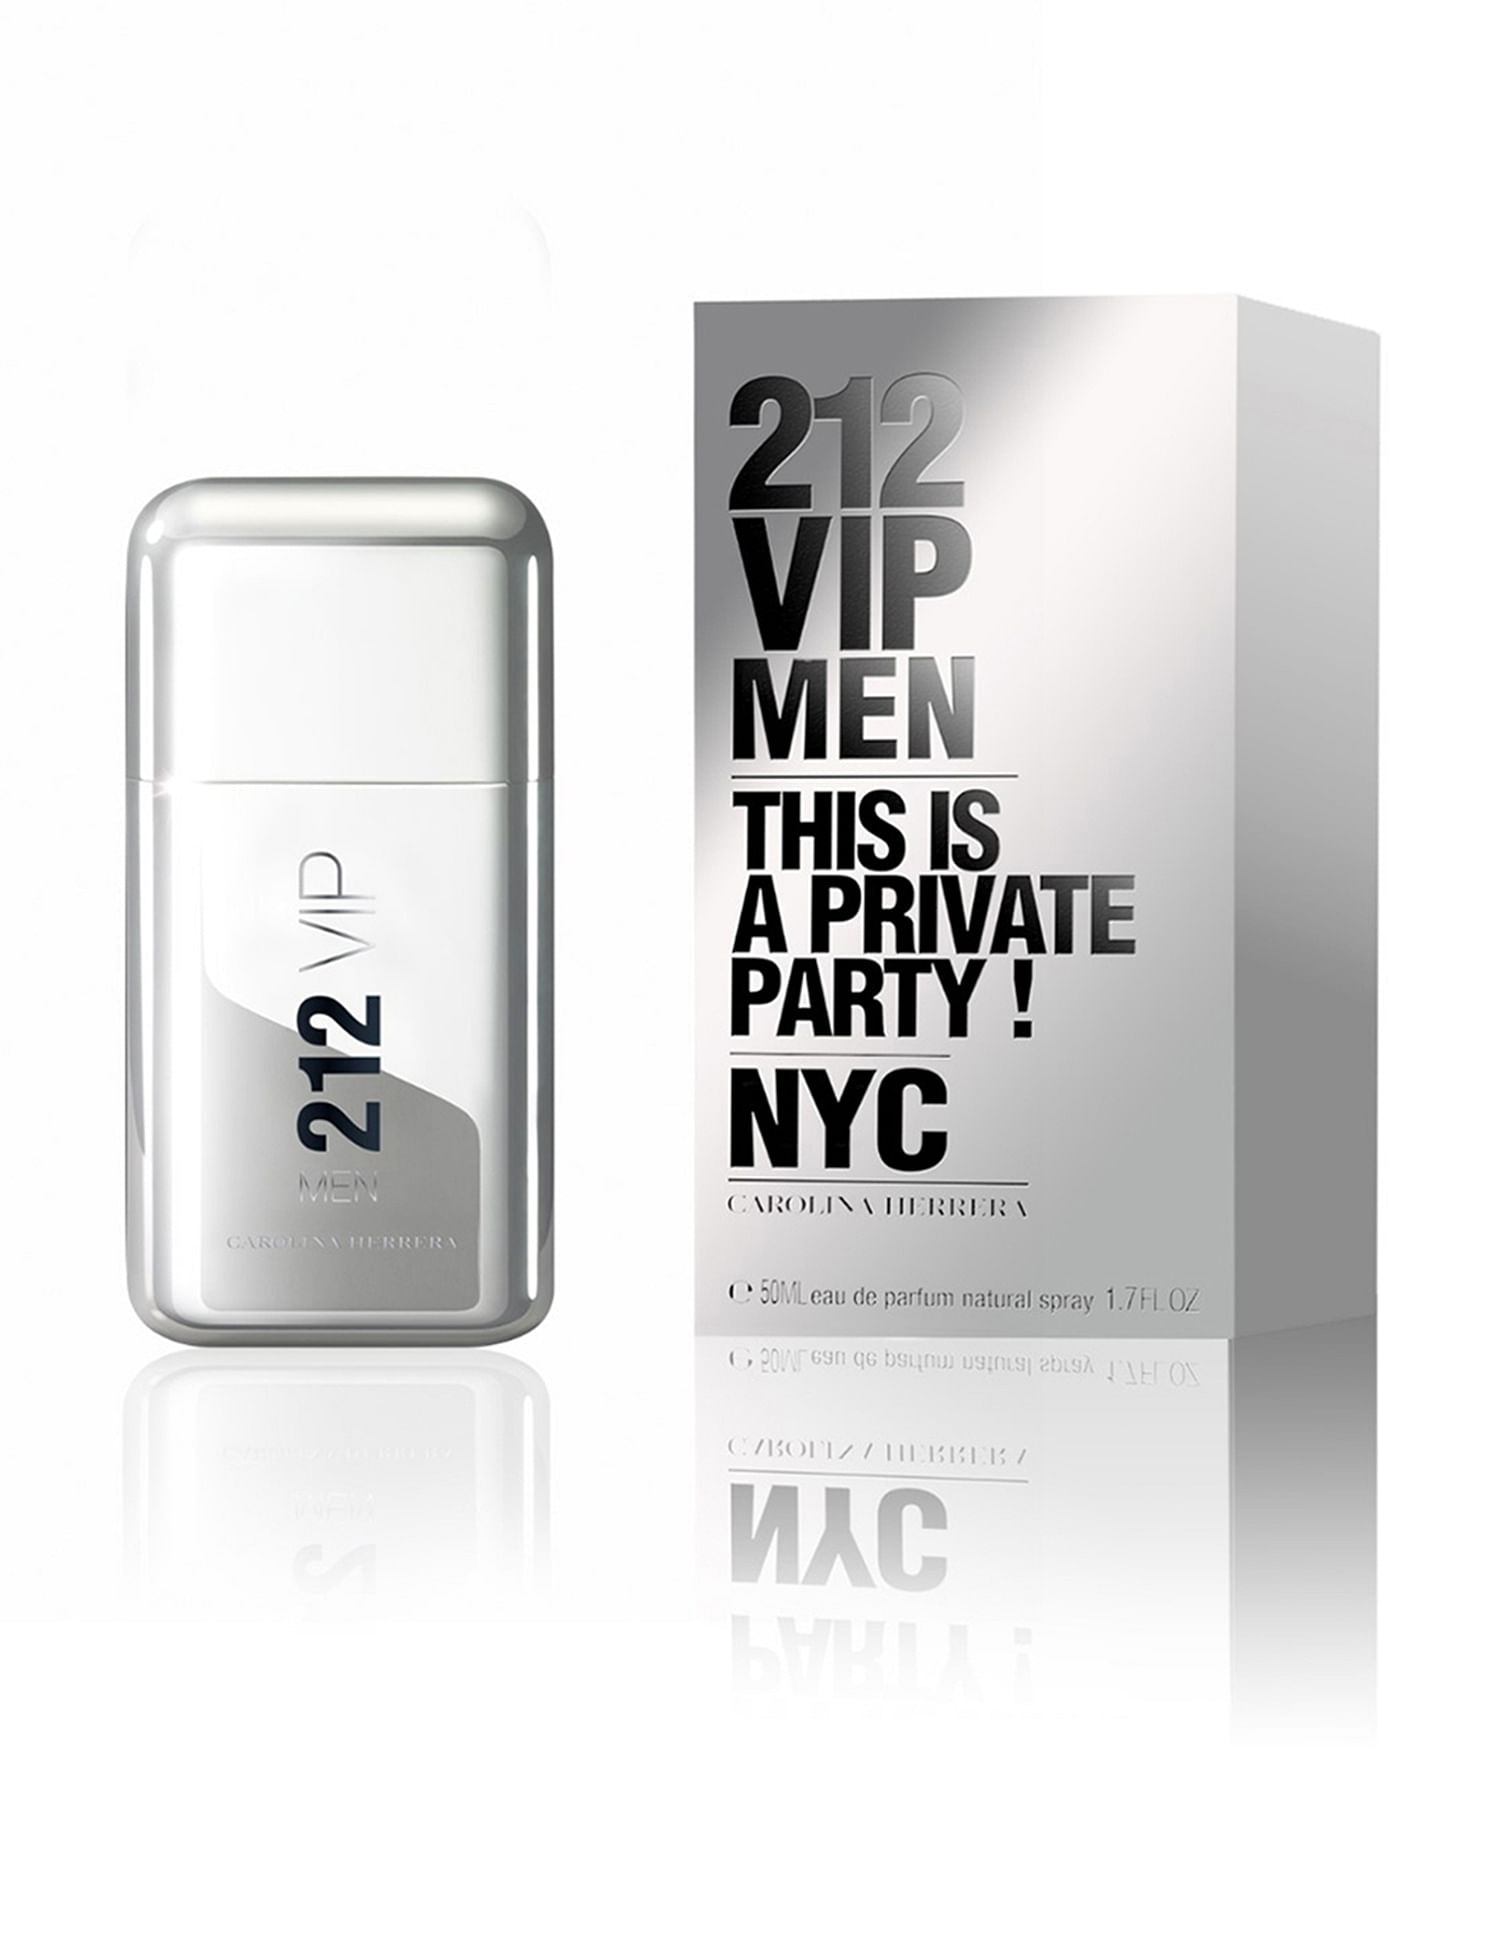 212 VIP Men - Fragrances